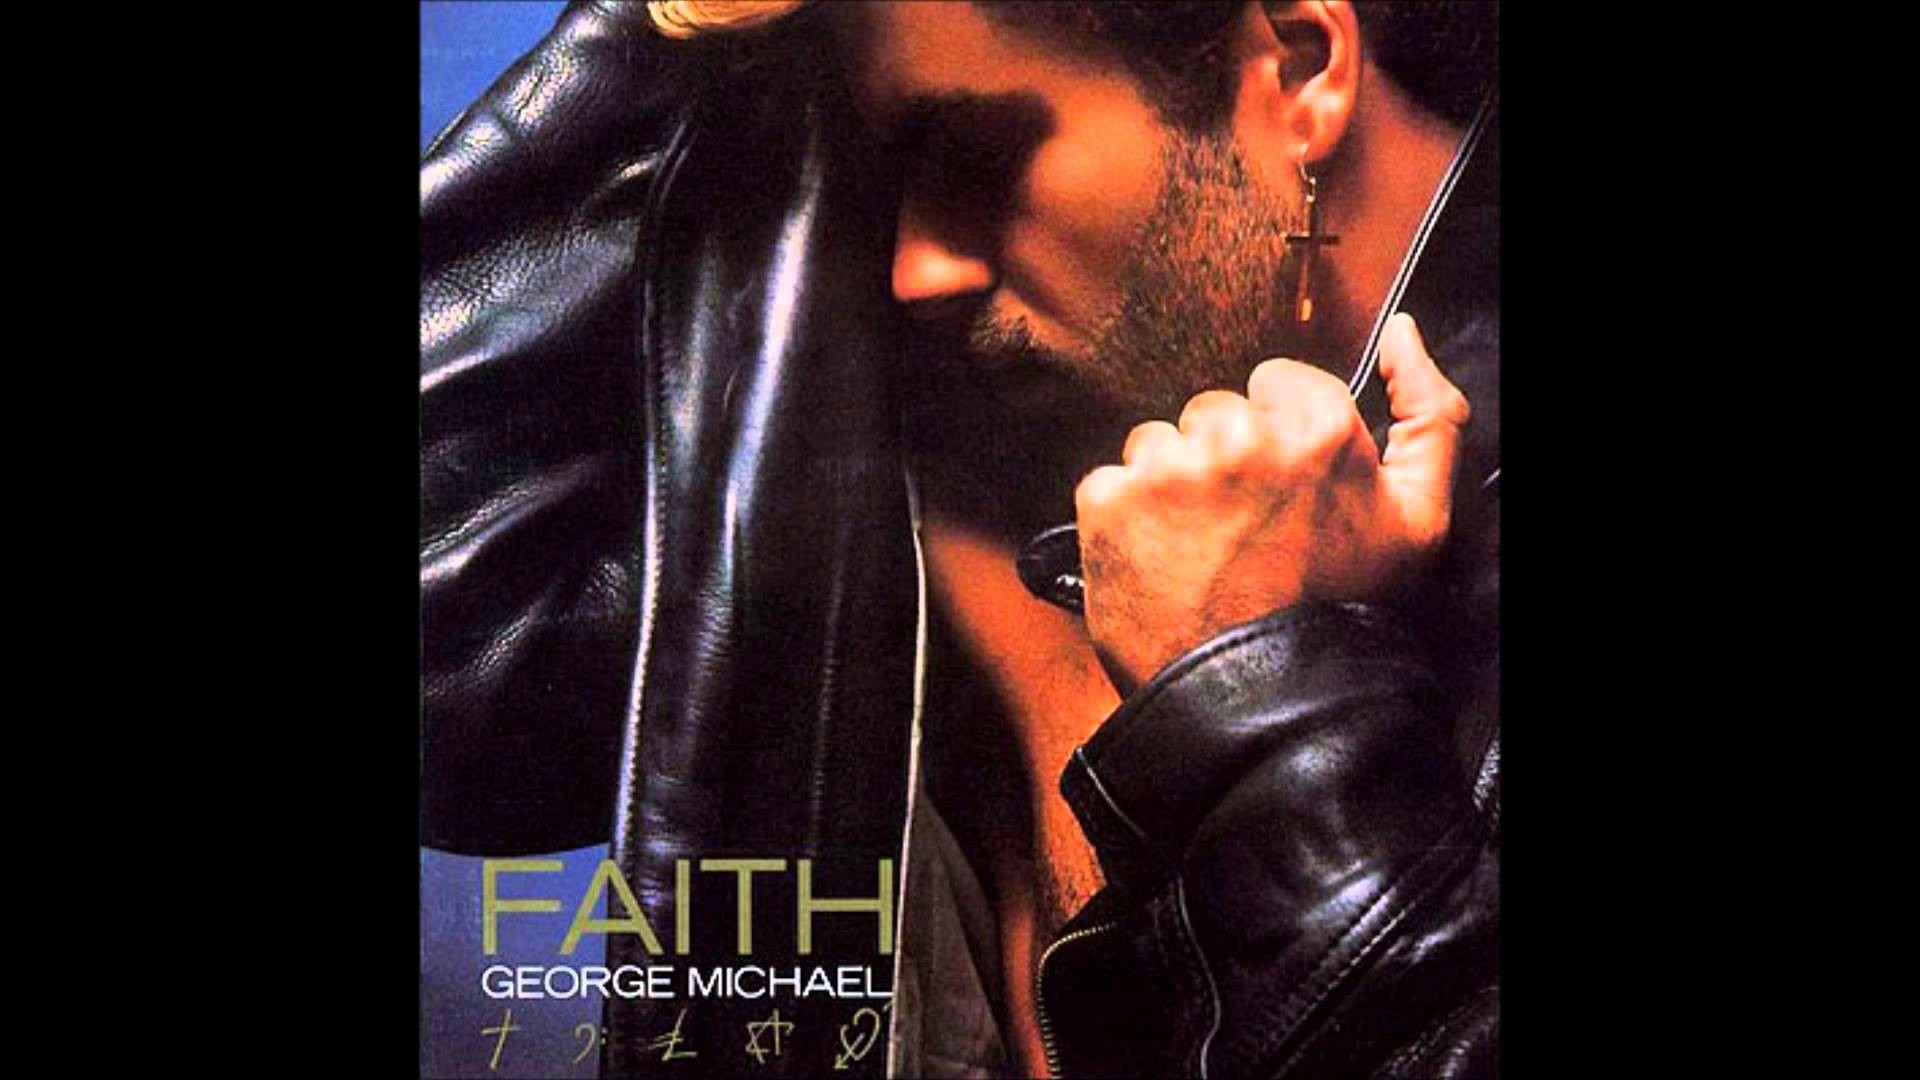 1920x1080 GEORGE MICHAEL - FAITH [HQ, 2013 REFRESH]